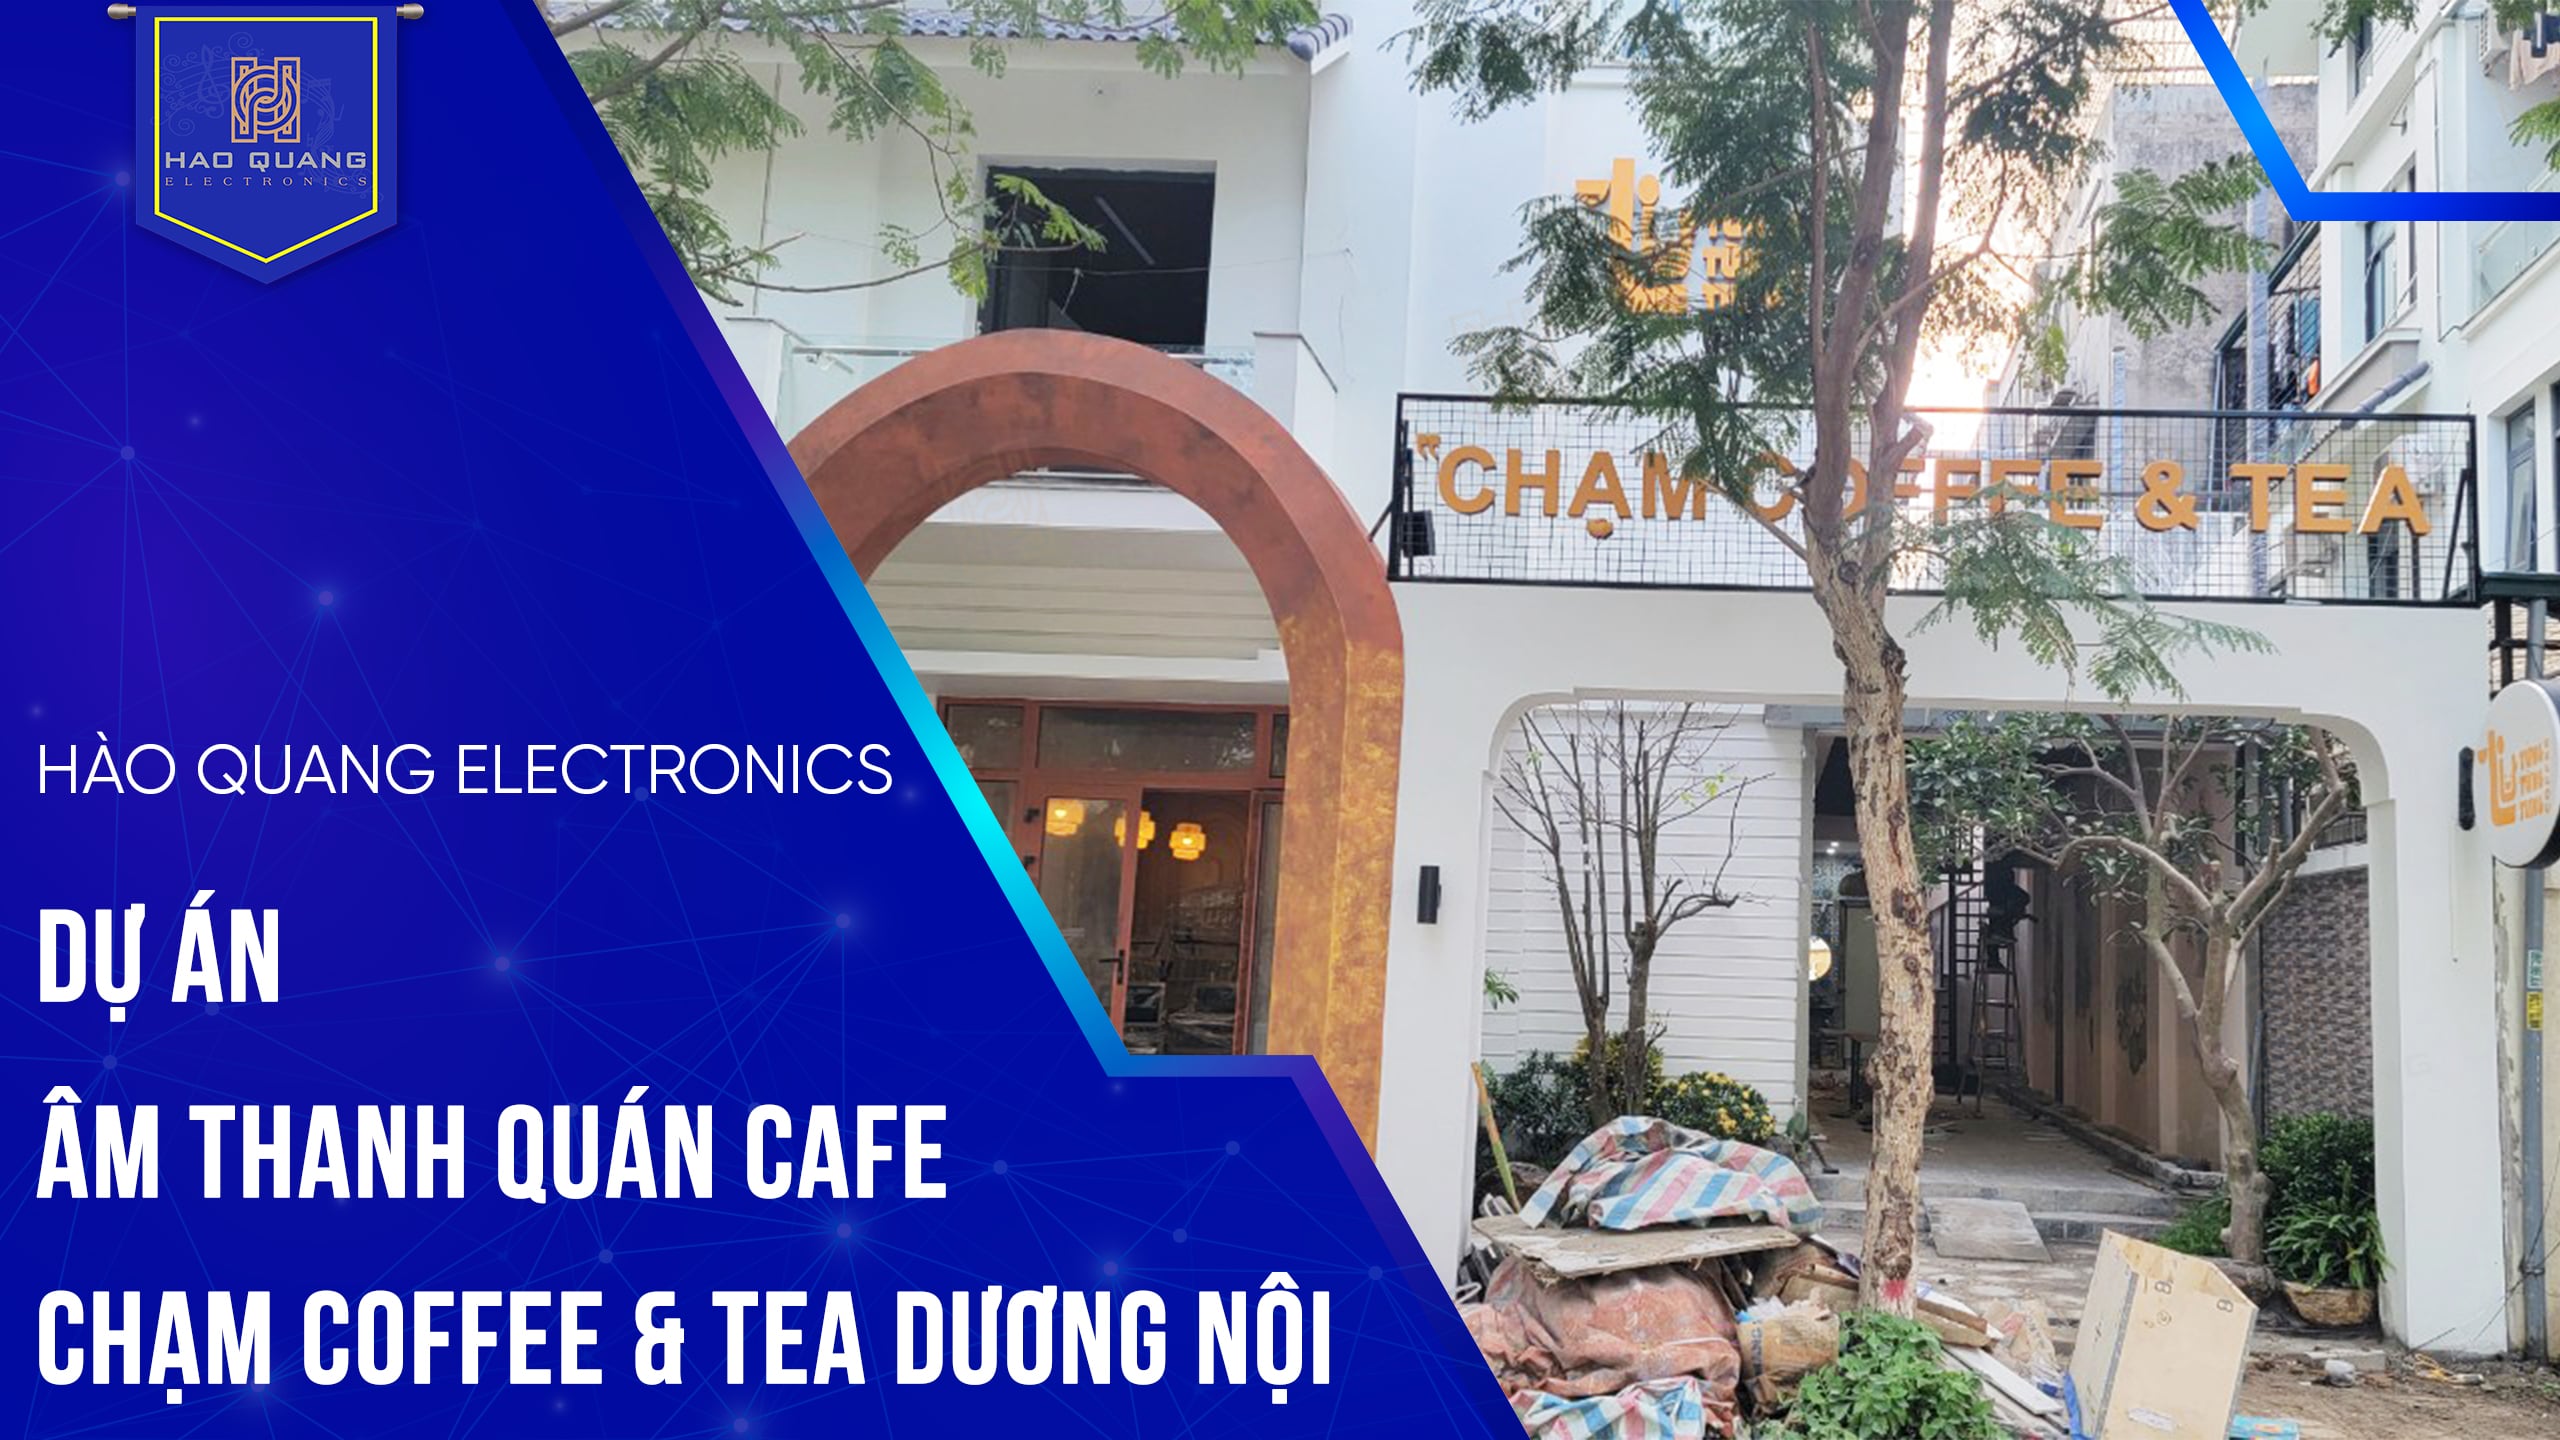 Lắp đặt dự án hệ thống âm thanh quán cafe Chạm Coffee & Tea Dương Nội